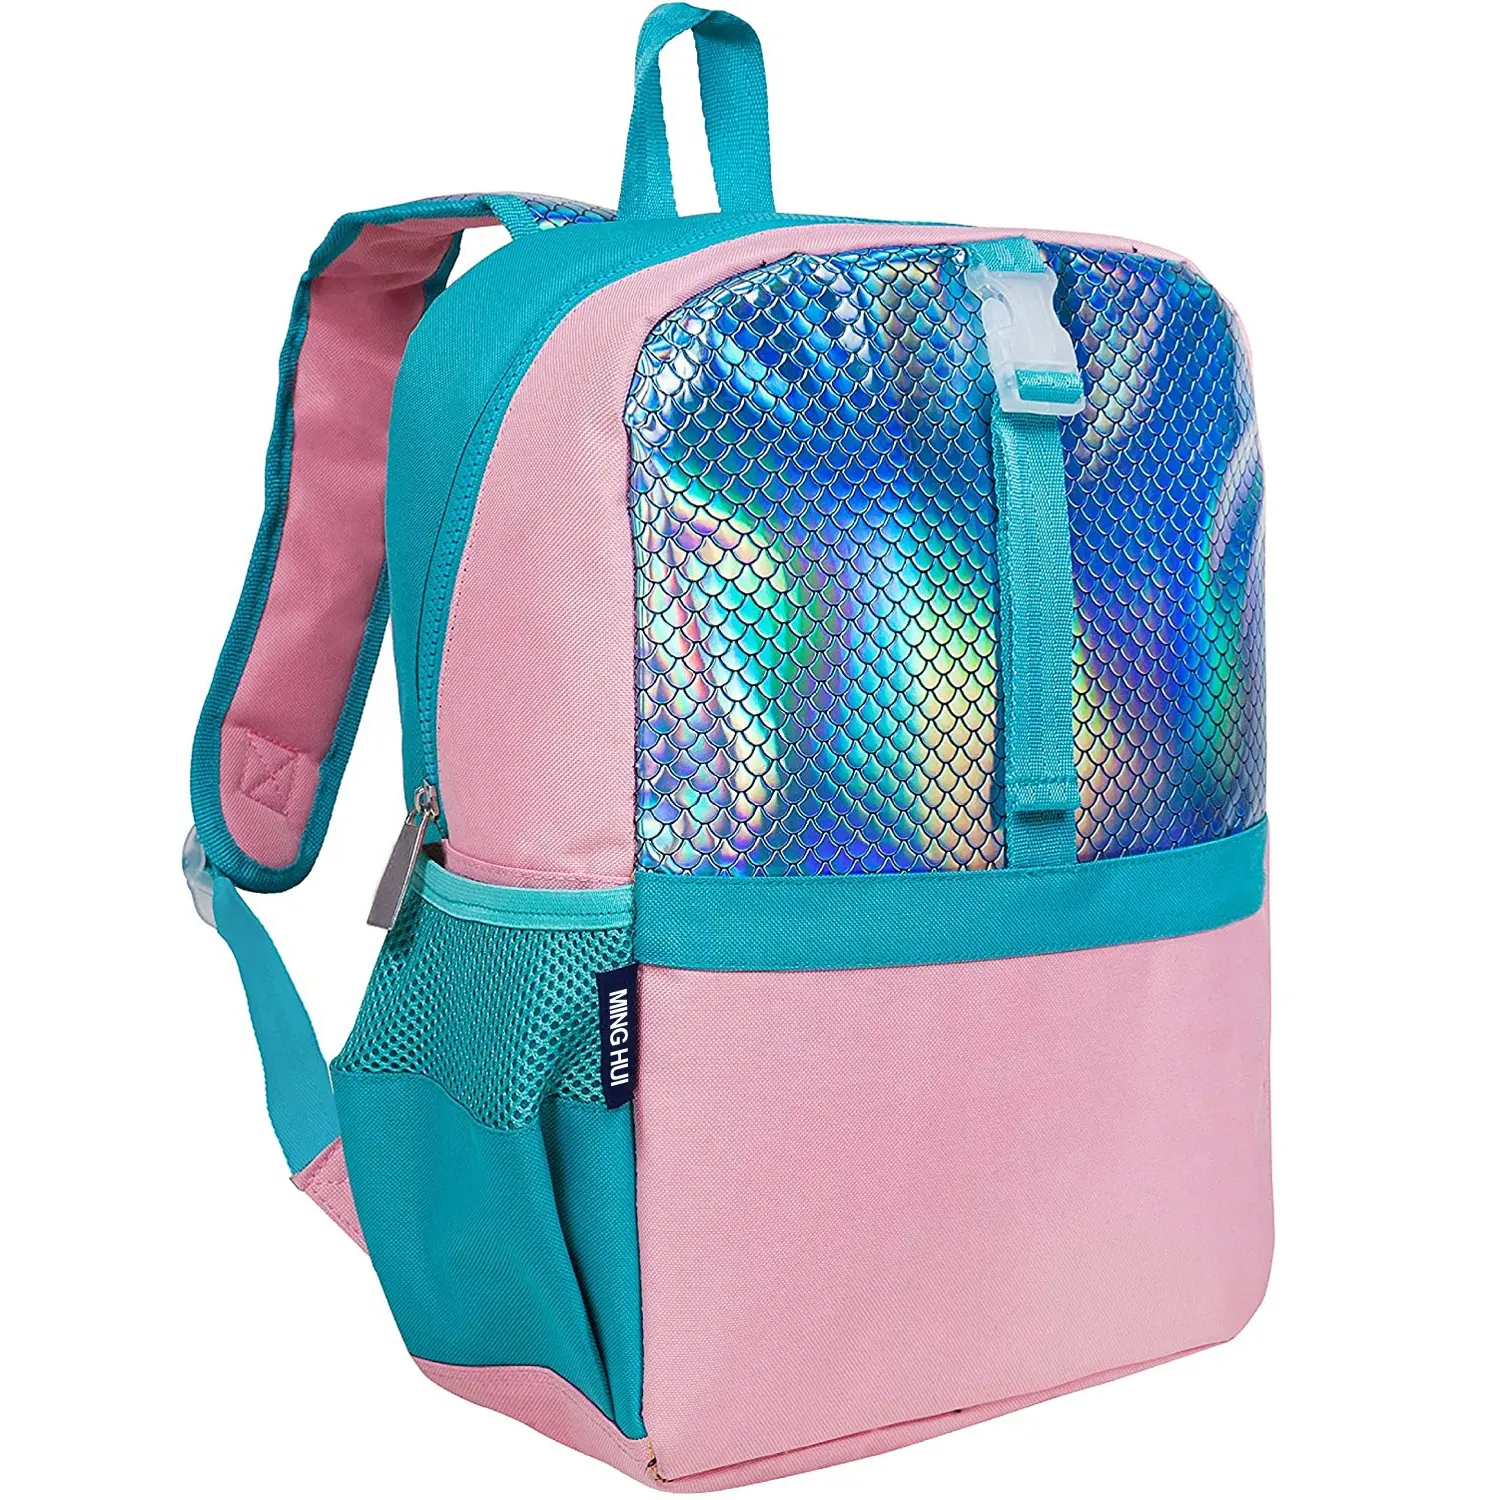 Little Mermaid backpack